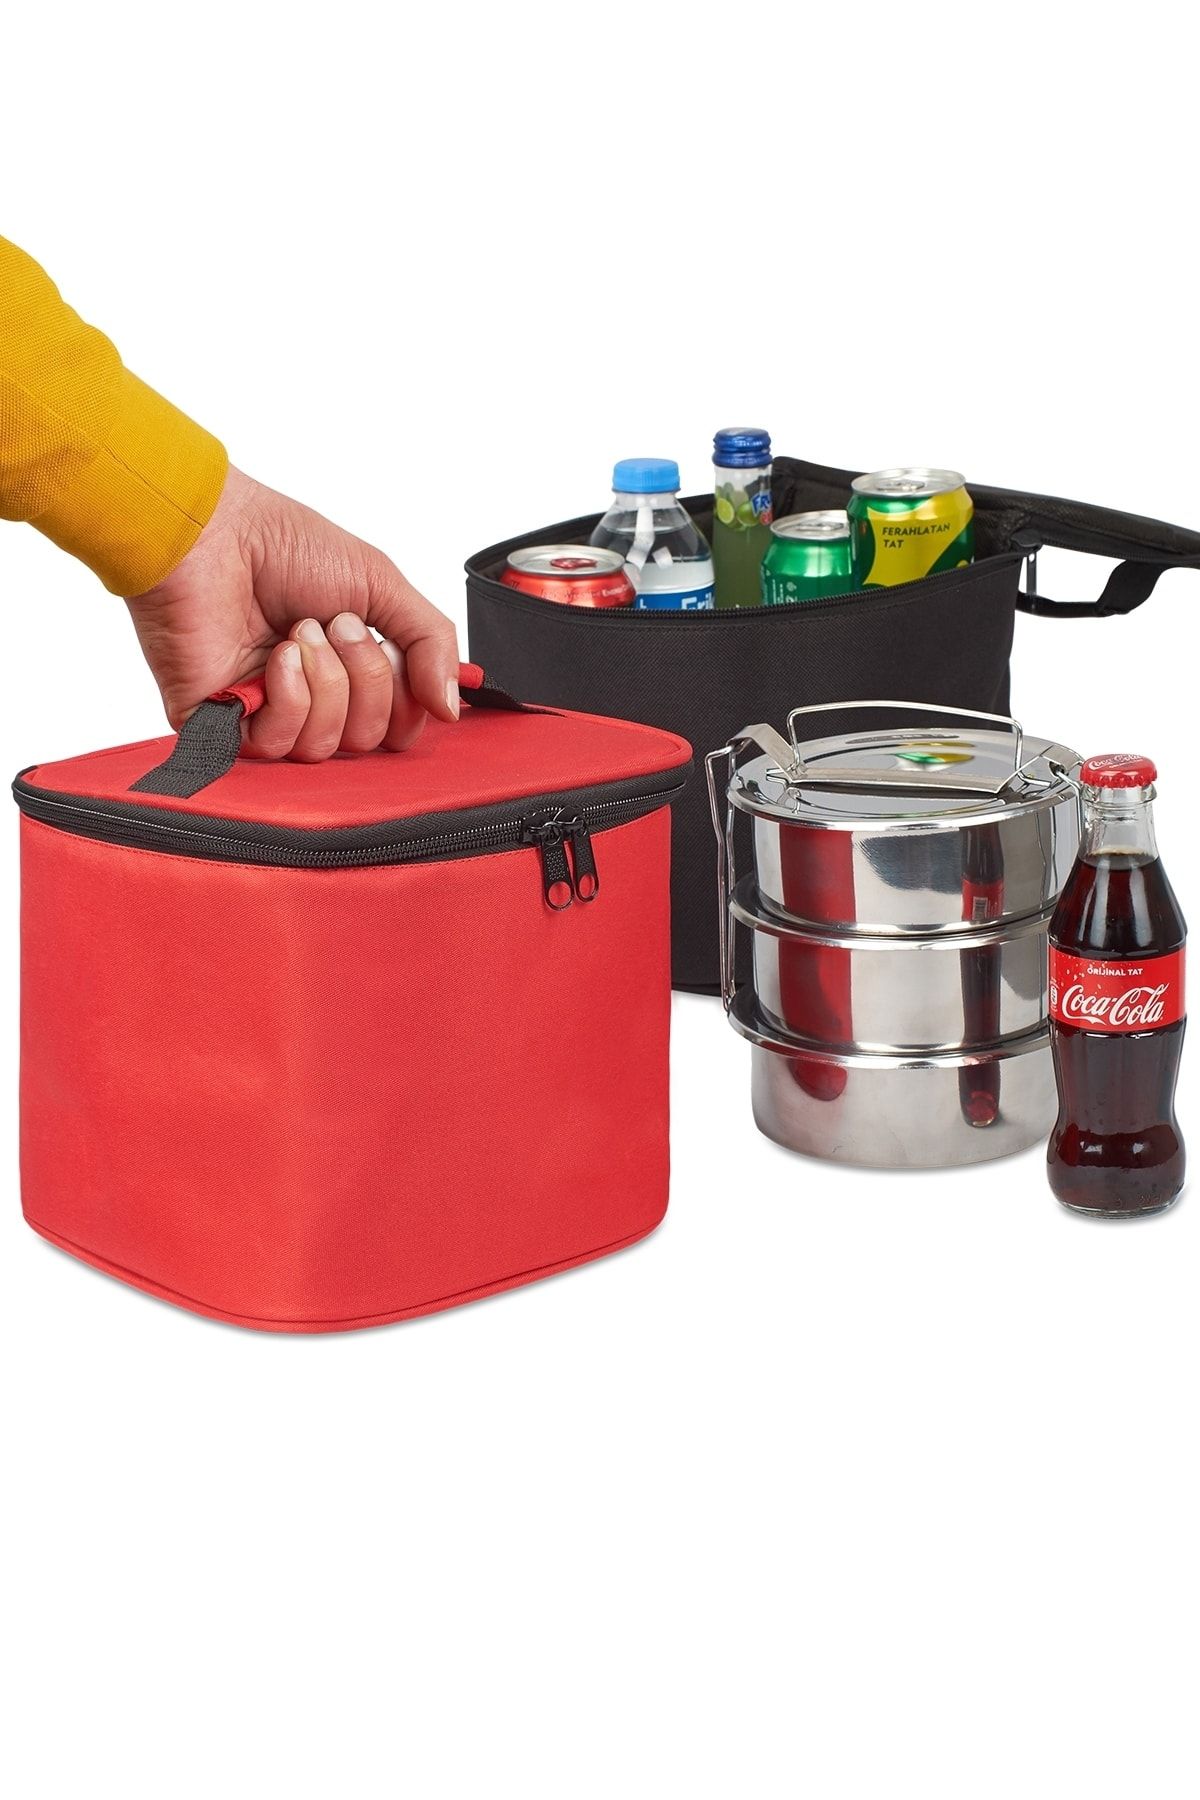 Ankaflex Sıvı Geçirmez Sefer Tası Çantası Yemek Çantası Alet Çantası Içecek Taşıma Çantası Saklama Kabı Çanta